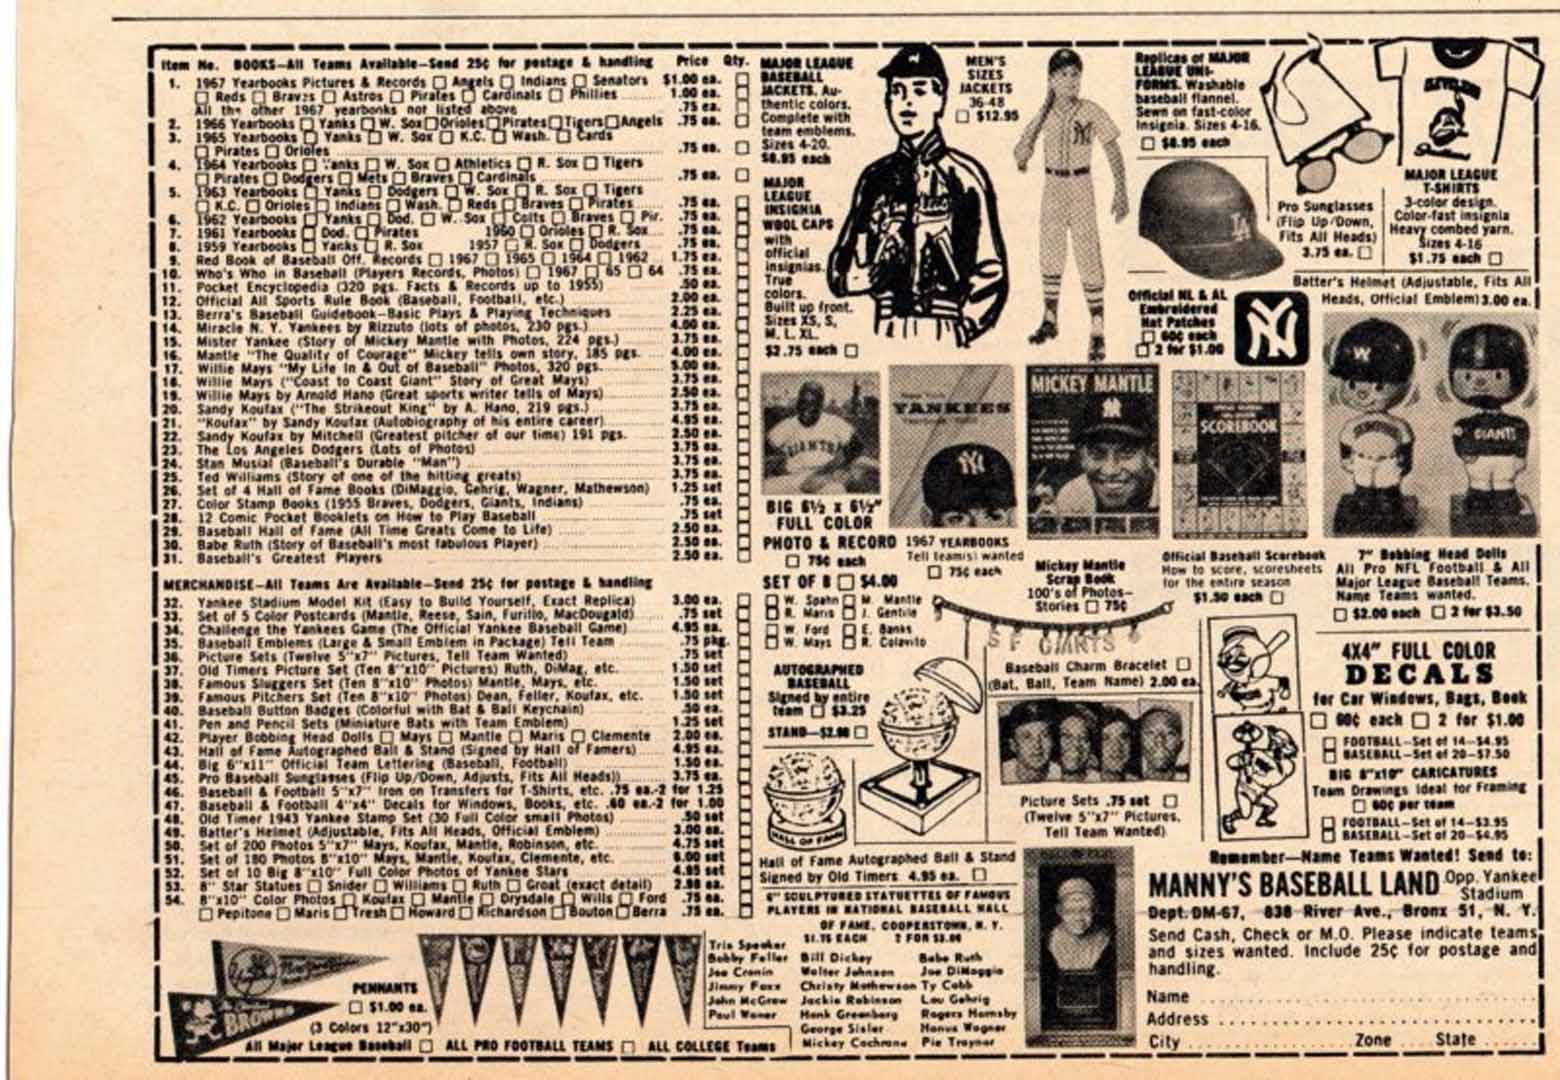 1966 baseball news